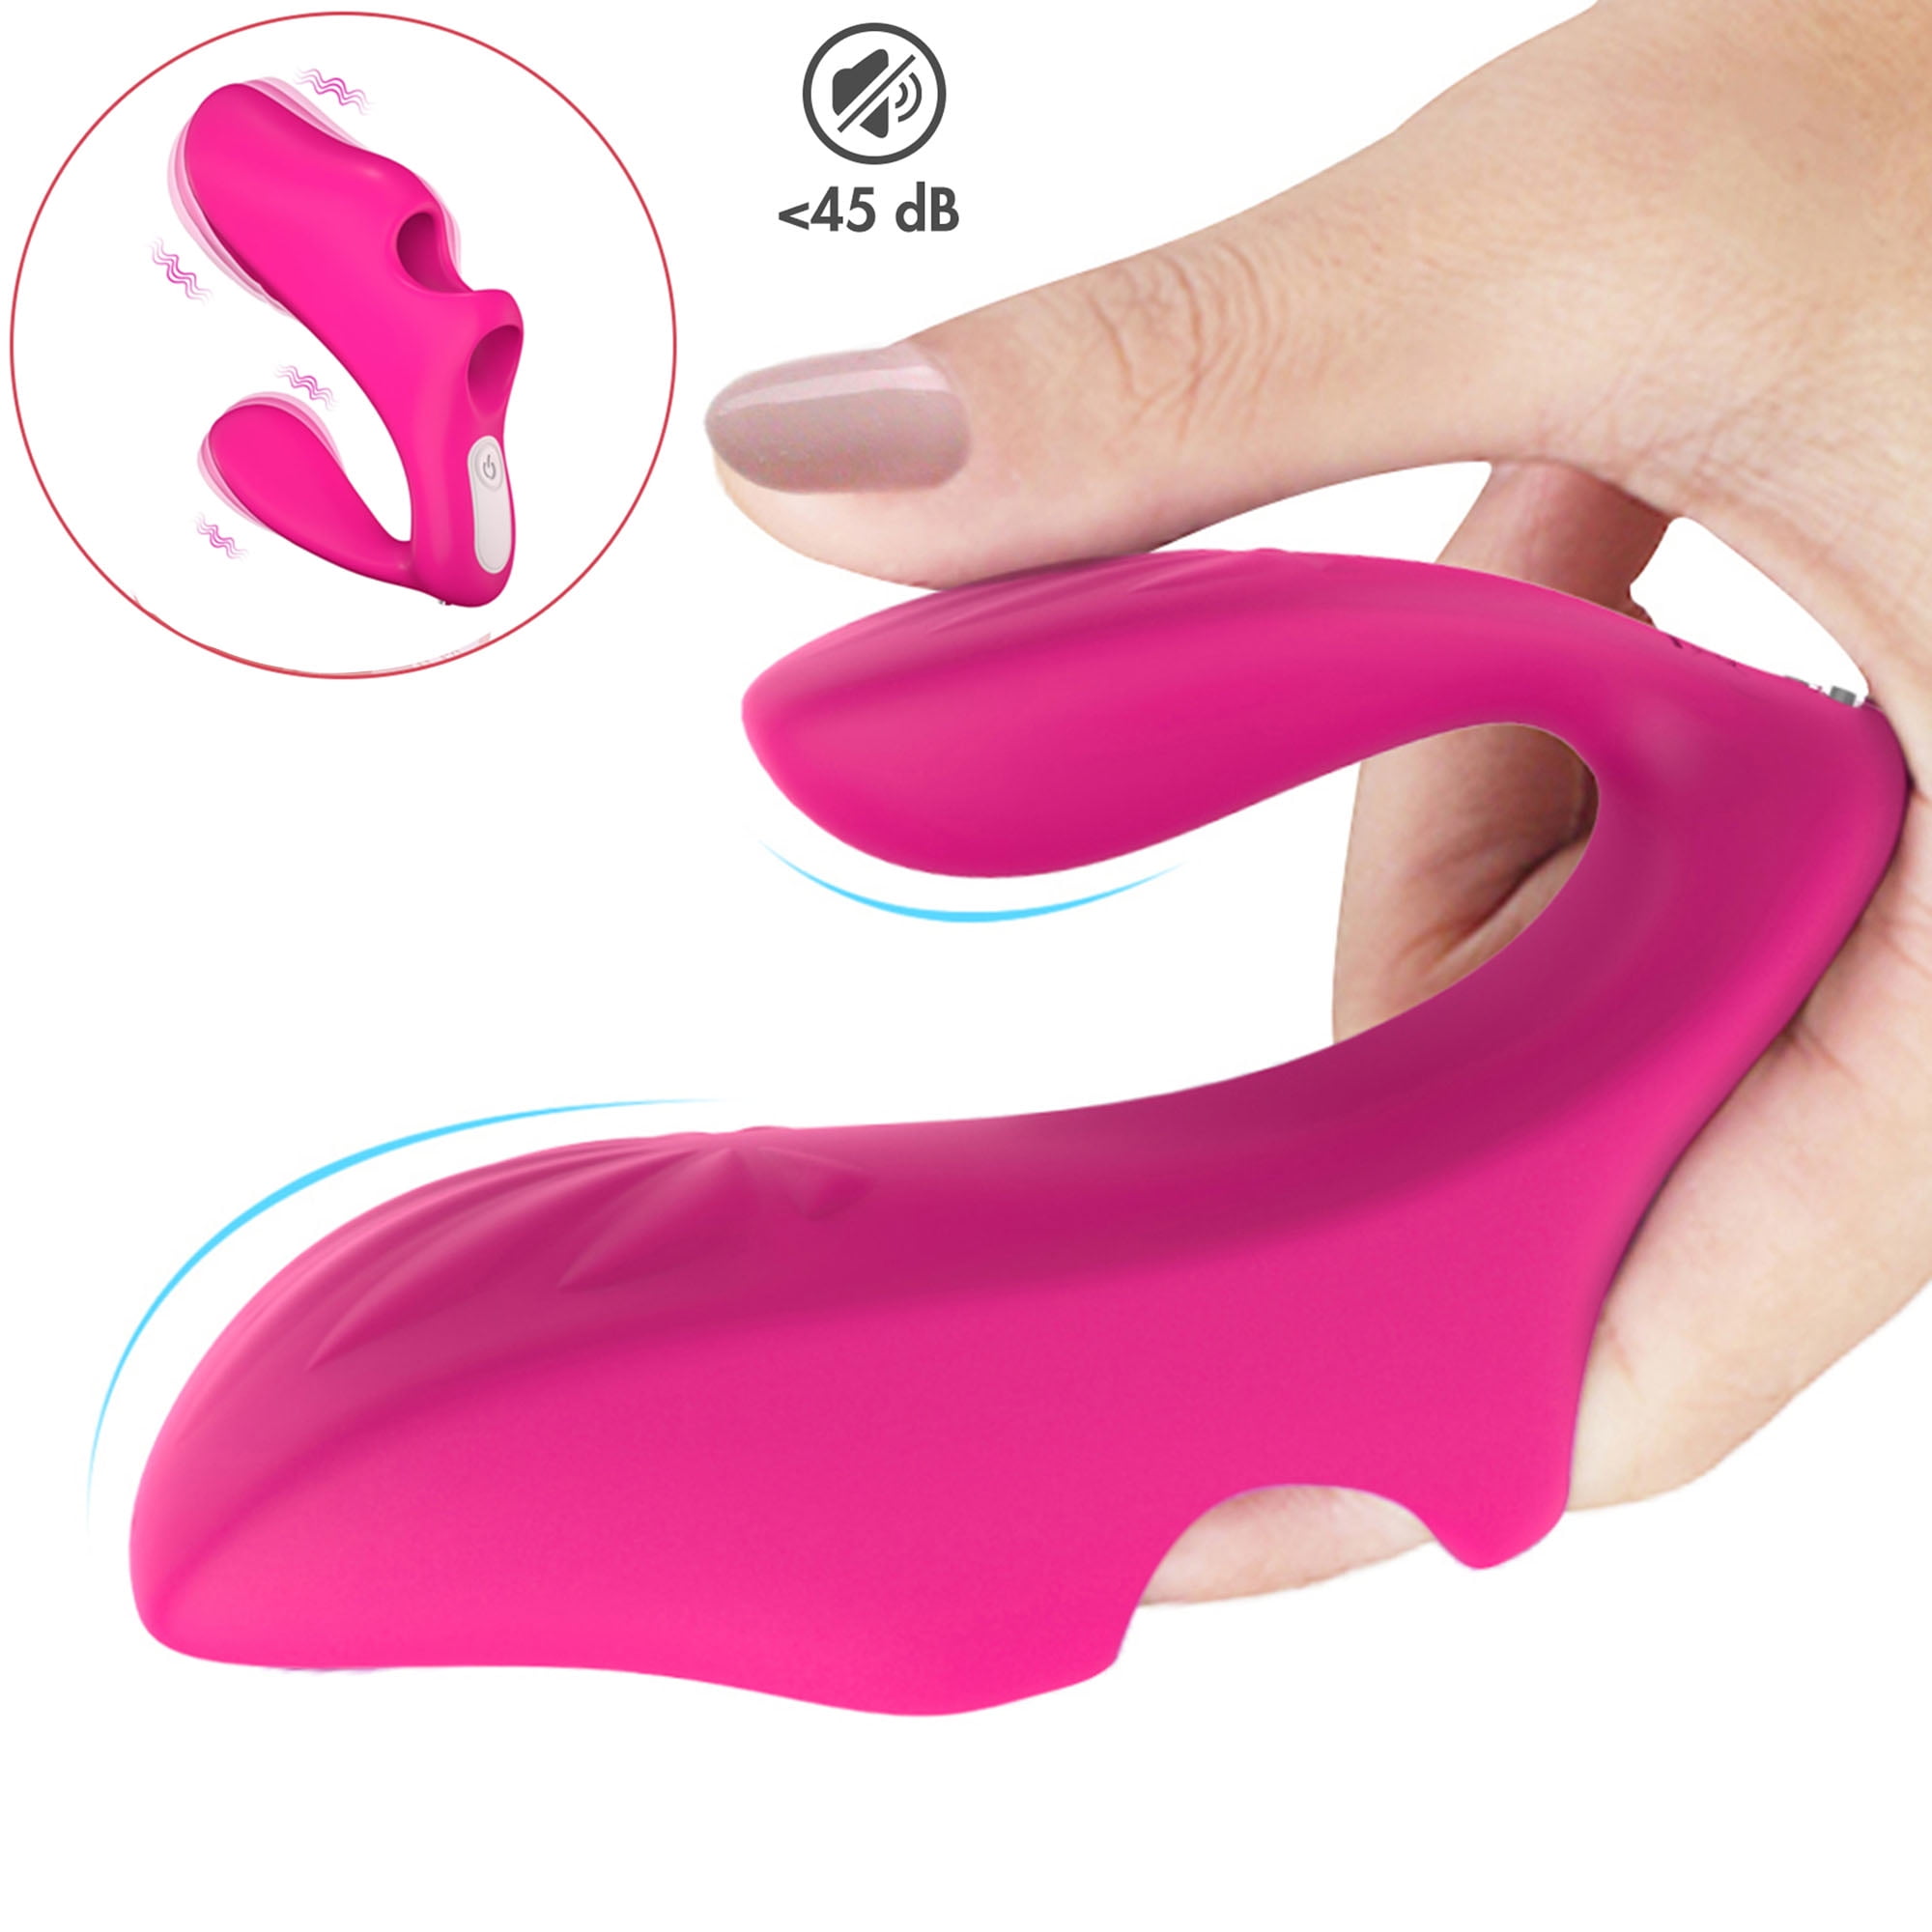 Fidech Finger Vibrator For Women G Spot Vibrator Silicone Finger Sleeve Shape Clit Stimulator